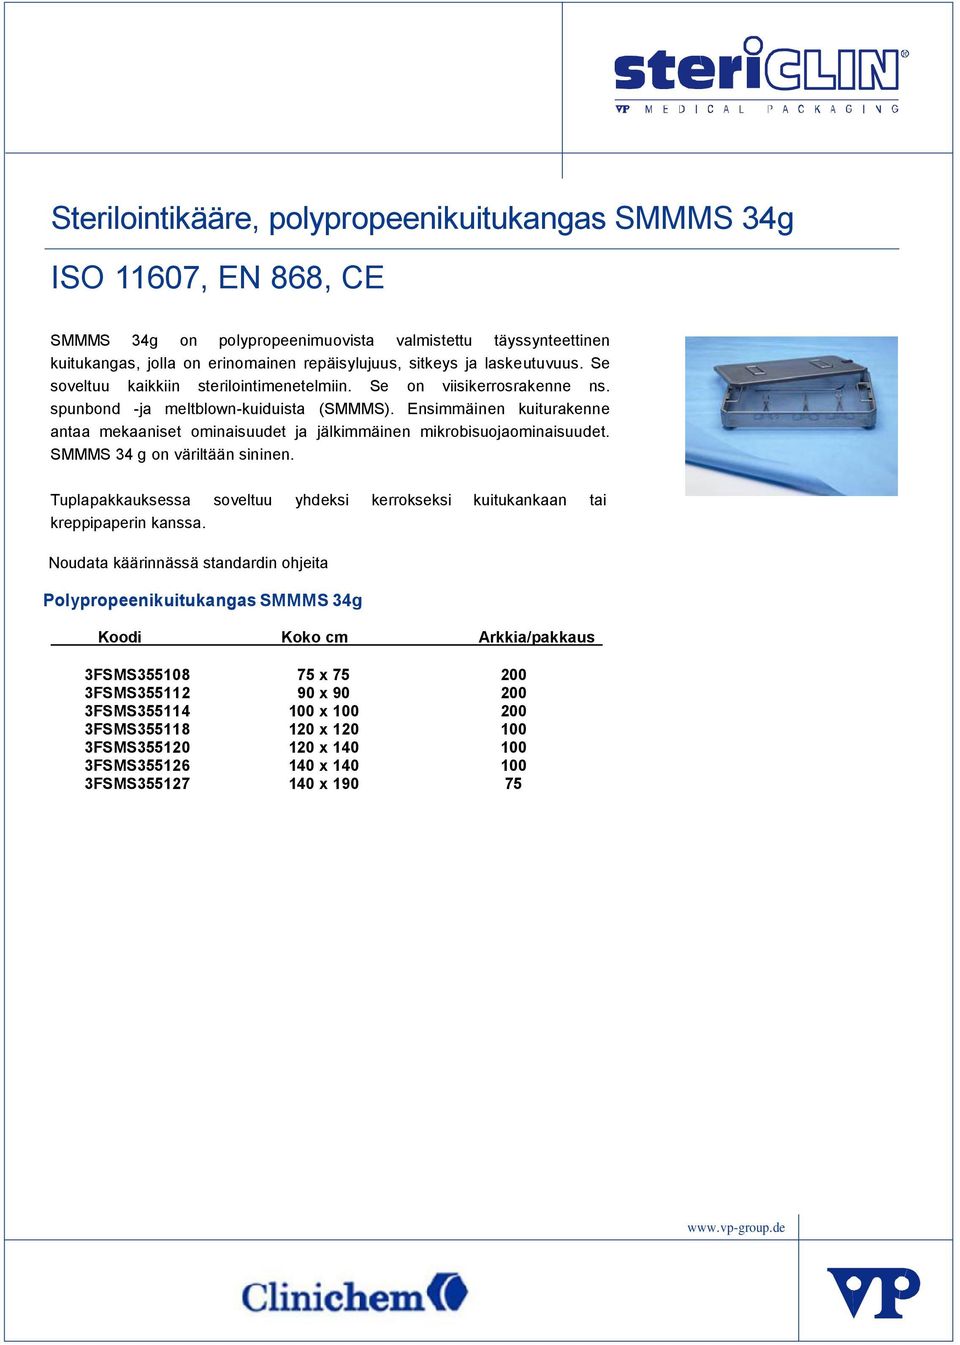 Ensimmäinen kuiturakenne antaa mekaaniset ominaisuudet ja jälkimmäinen mikrobisuojaominaisuudet. SMMMS 34 g on väriltään sininen.